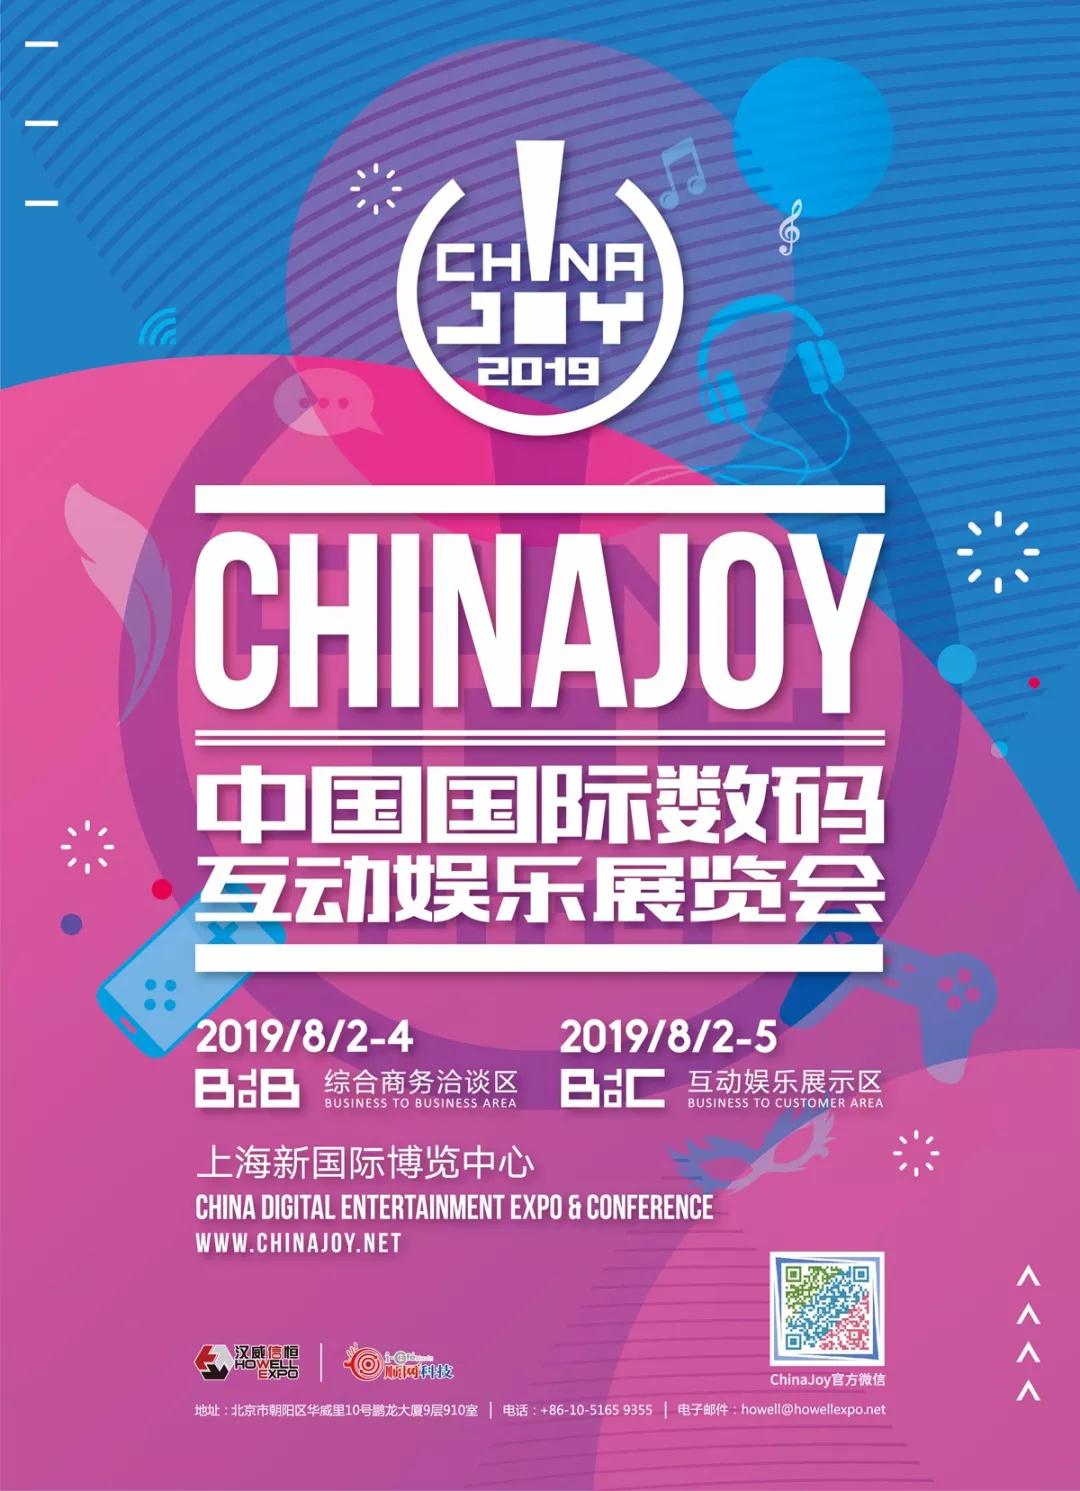 聚焦精品游戏，巨人网络确认参展2019年ChinaJoy BTOC！